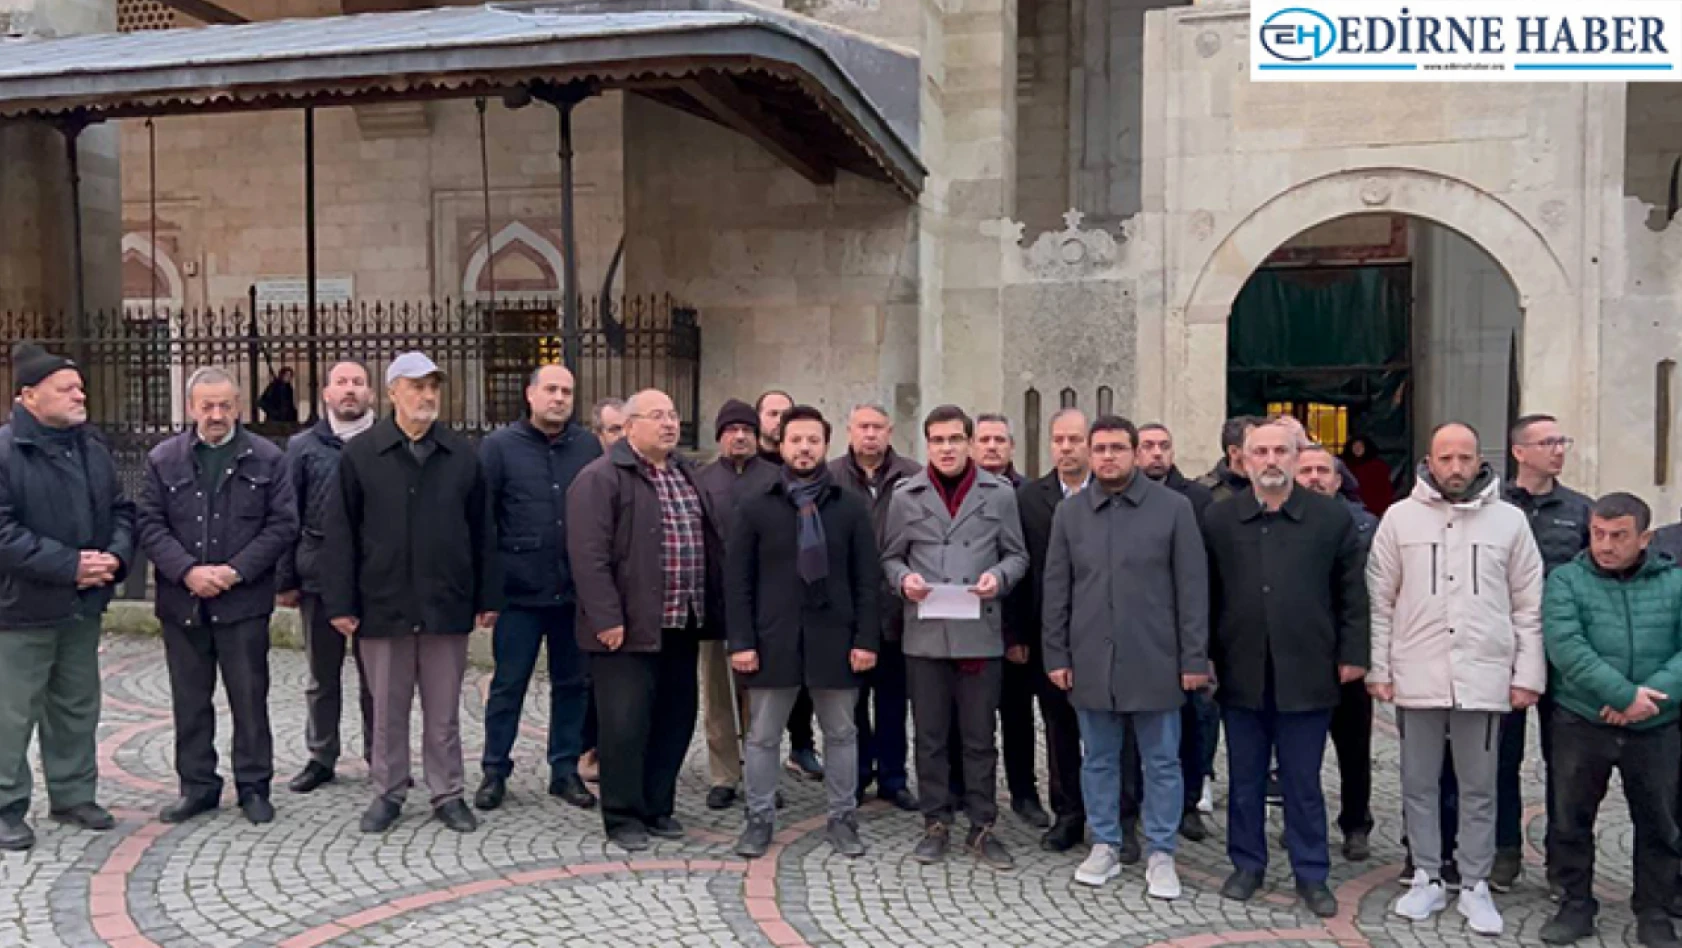 Edirne'de İsveç'te Kur'an-ı Kerim yakılmasına tepki